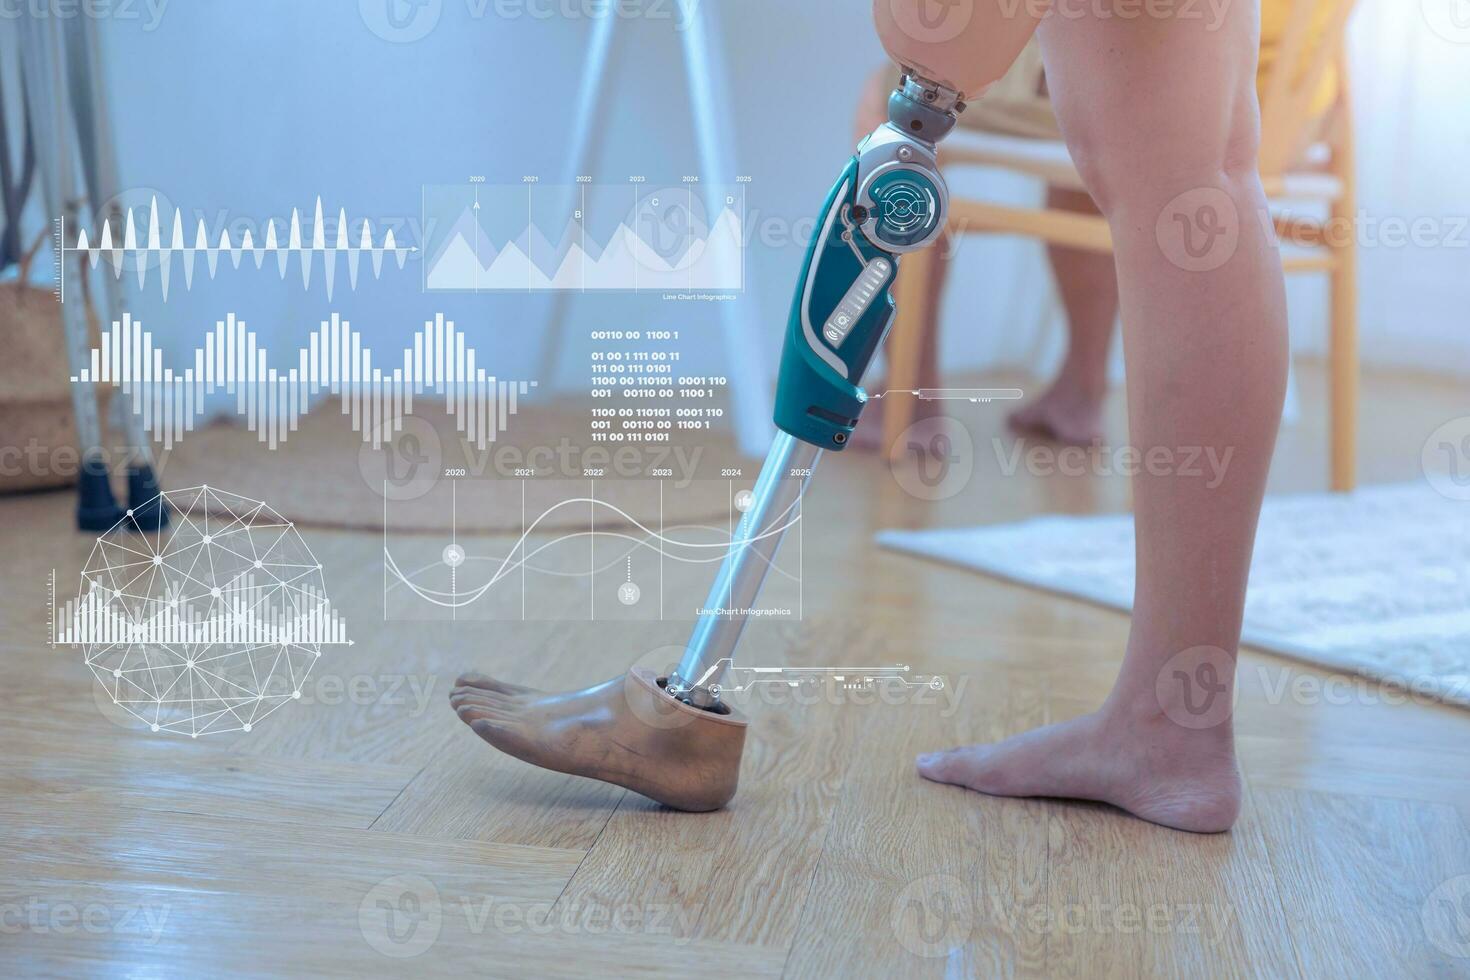 moderno tecnología en protésico pierna para invalidez gente. robótico artificial rodilla articulación biónico miembro con datos sensor cubrir gráfico foto